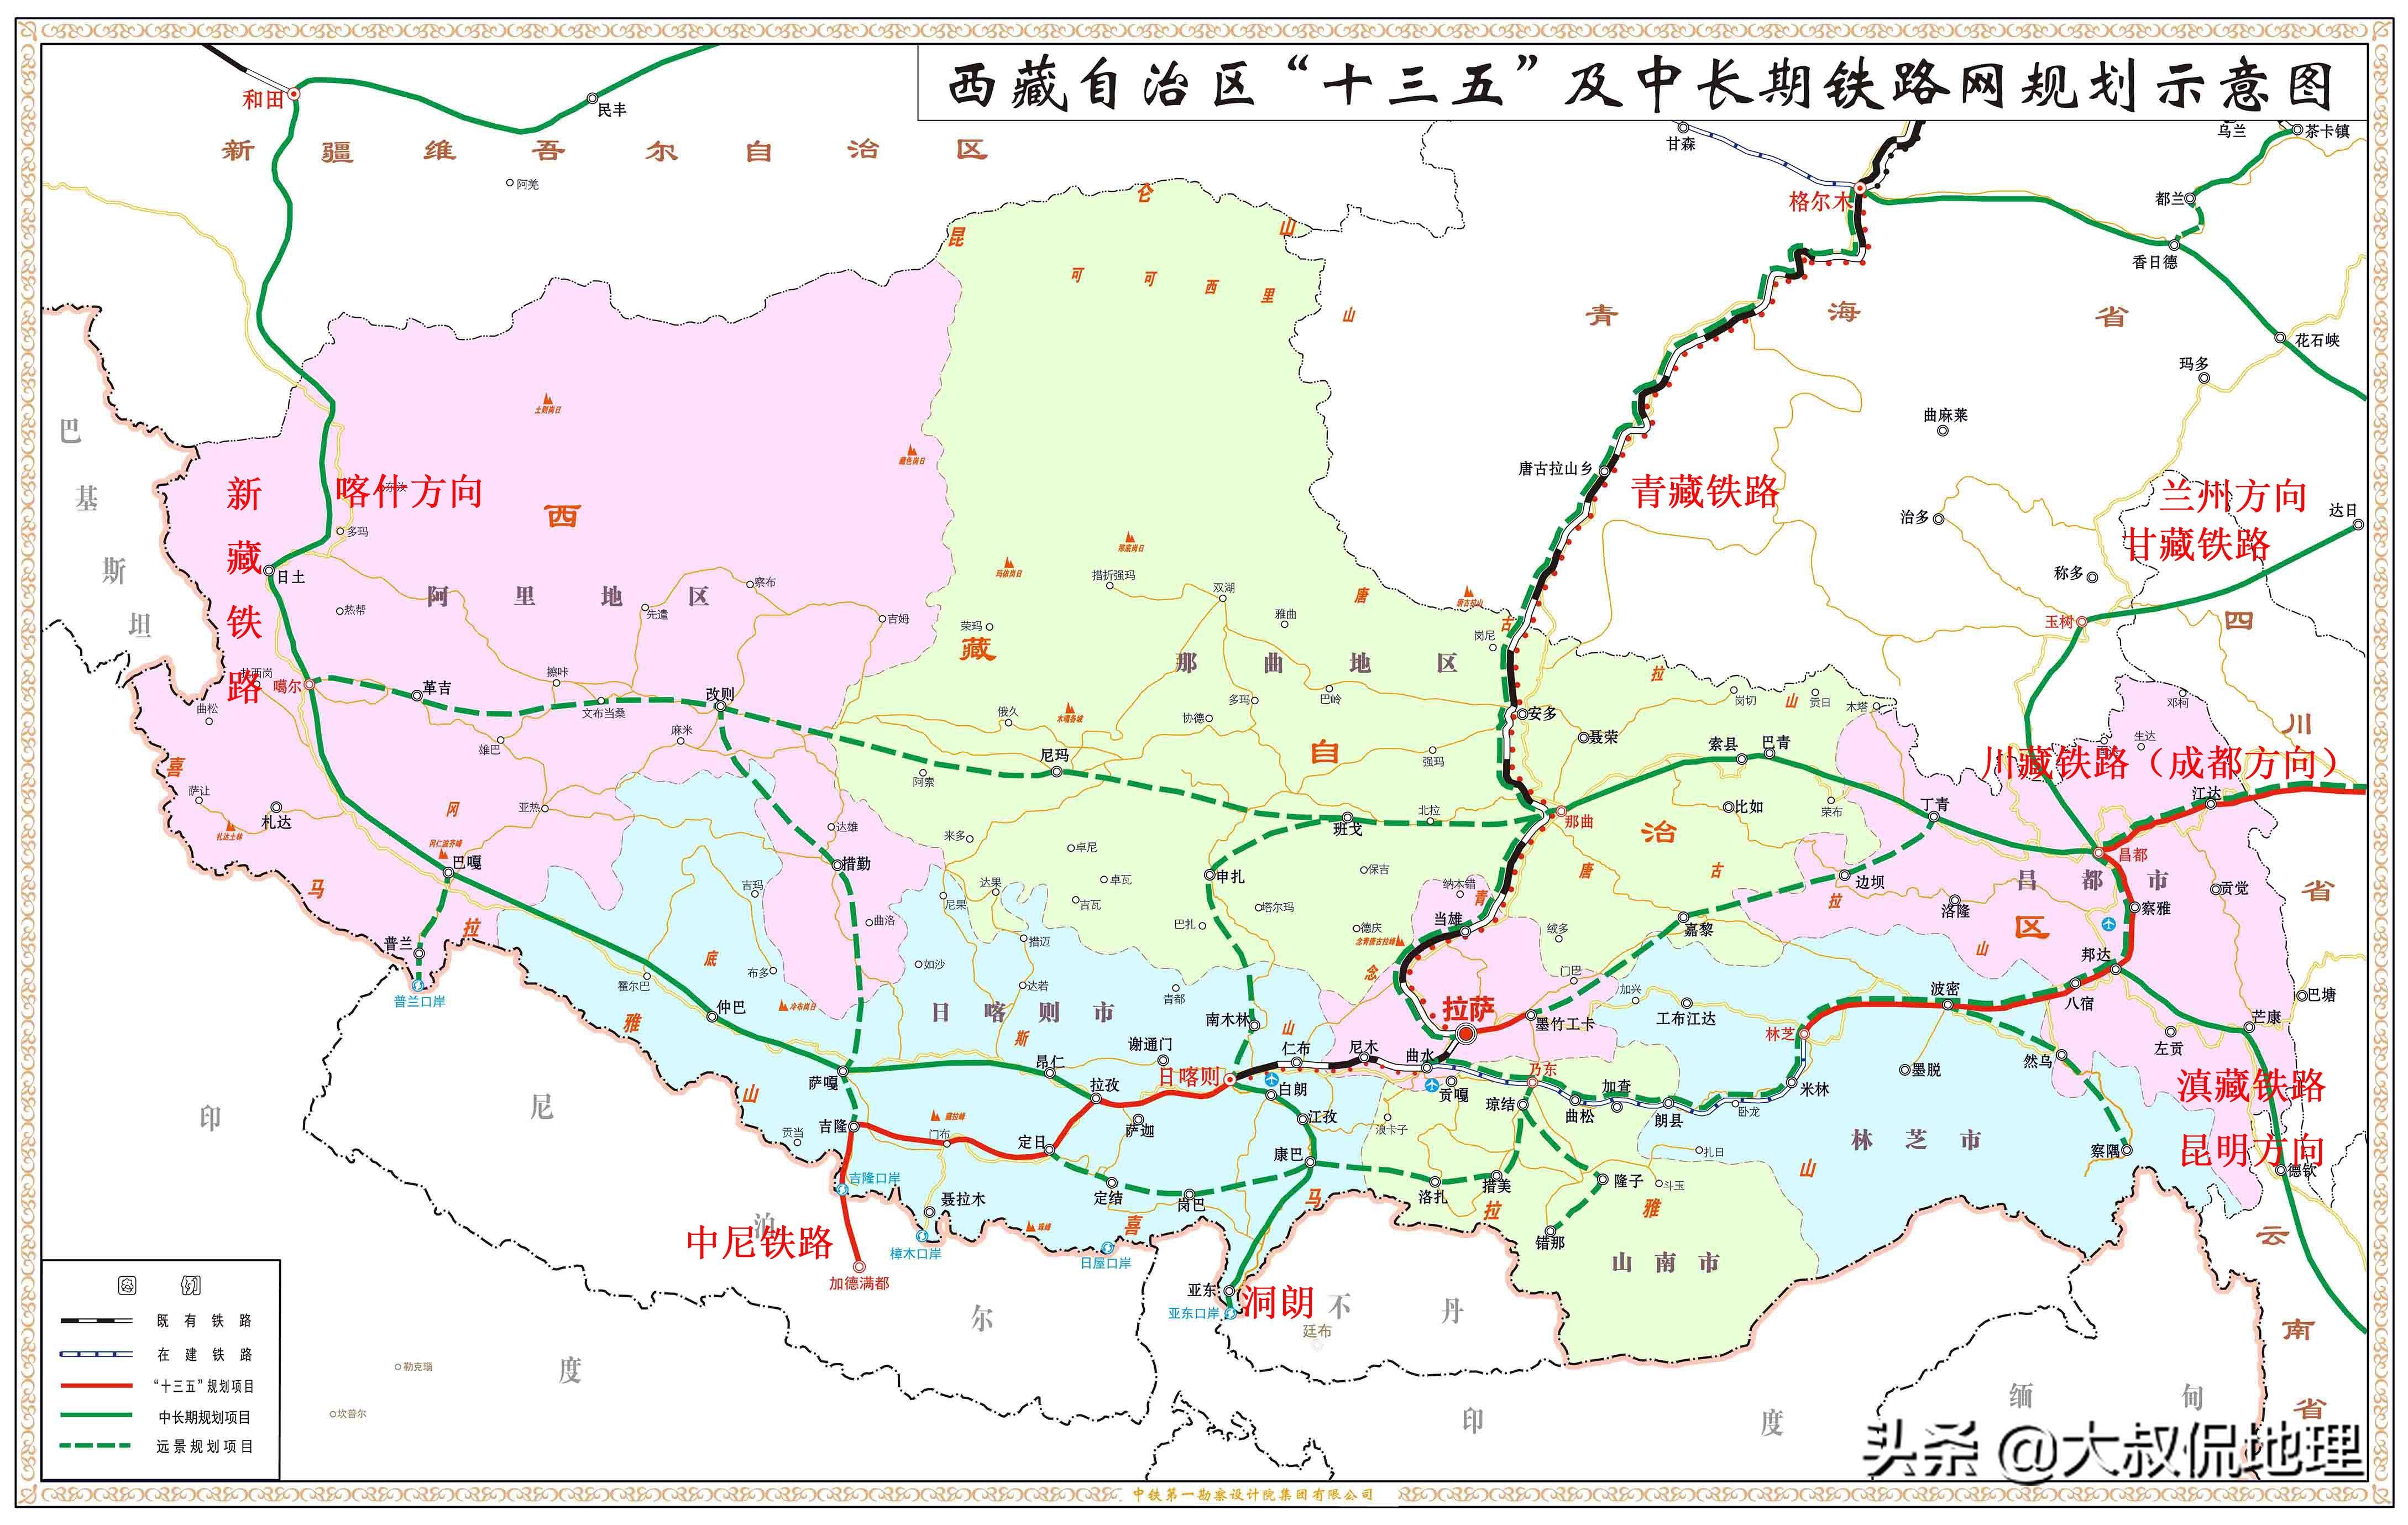 甘藏铁路路线图图片